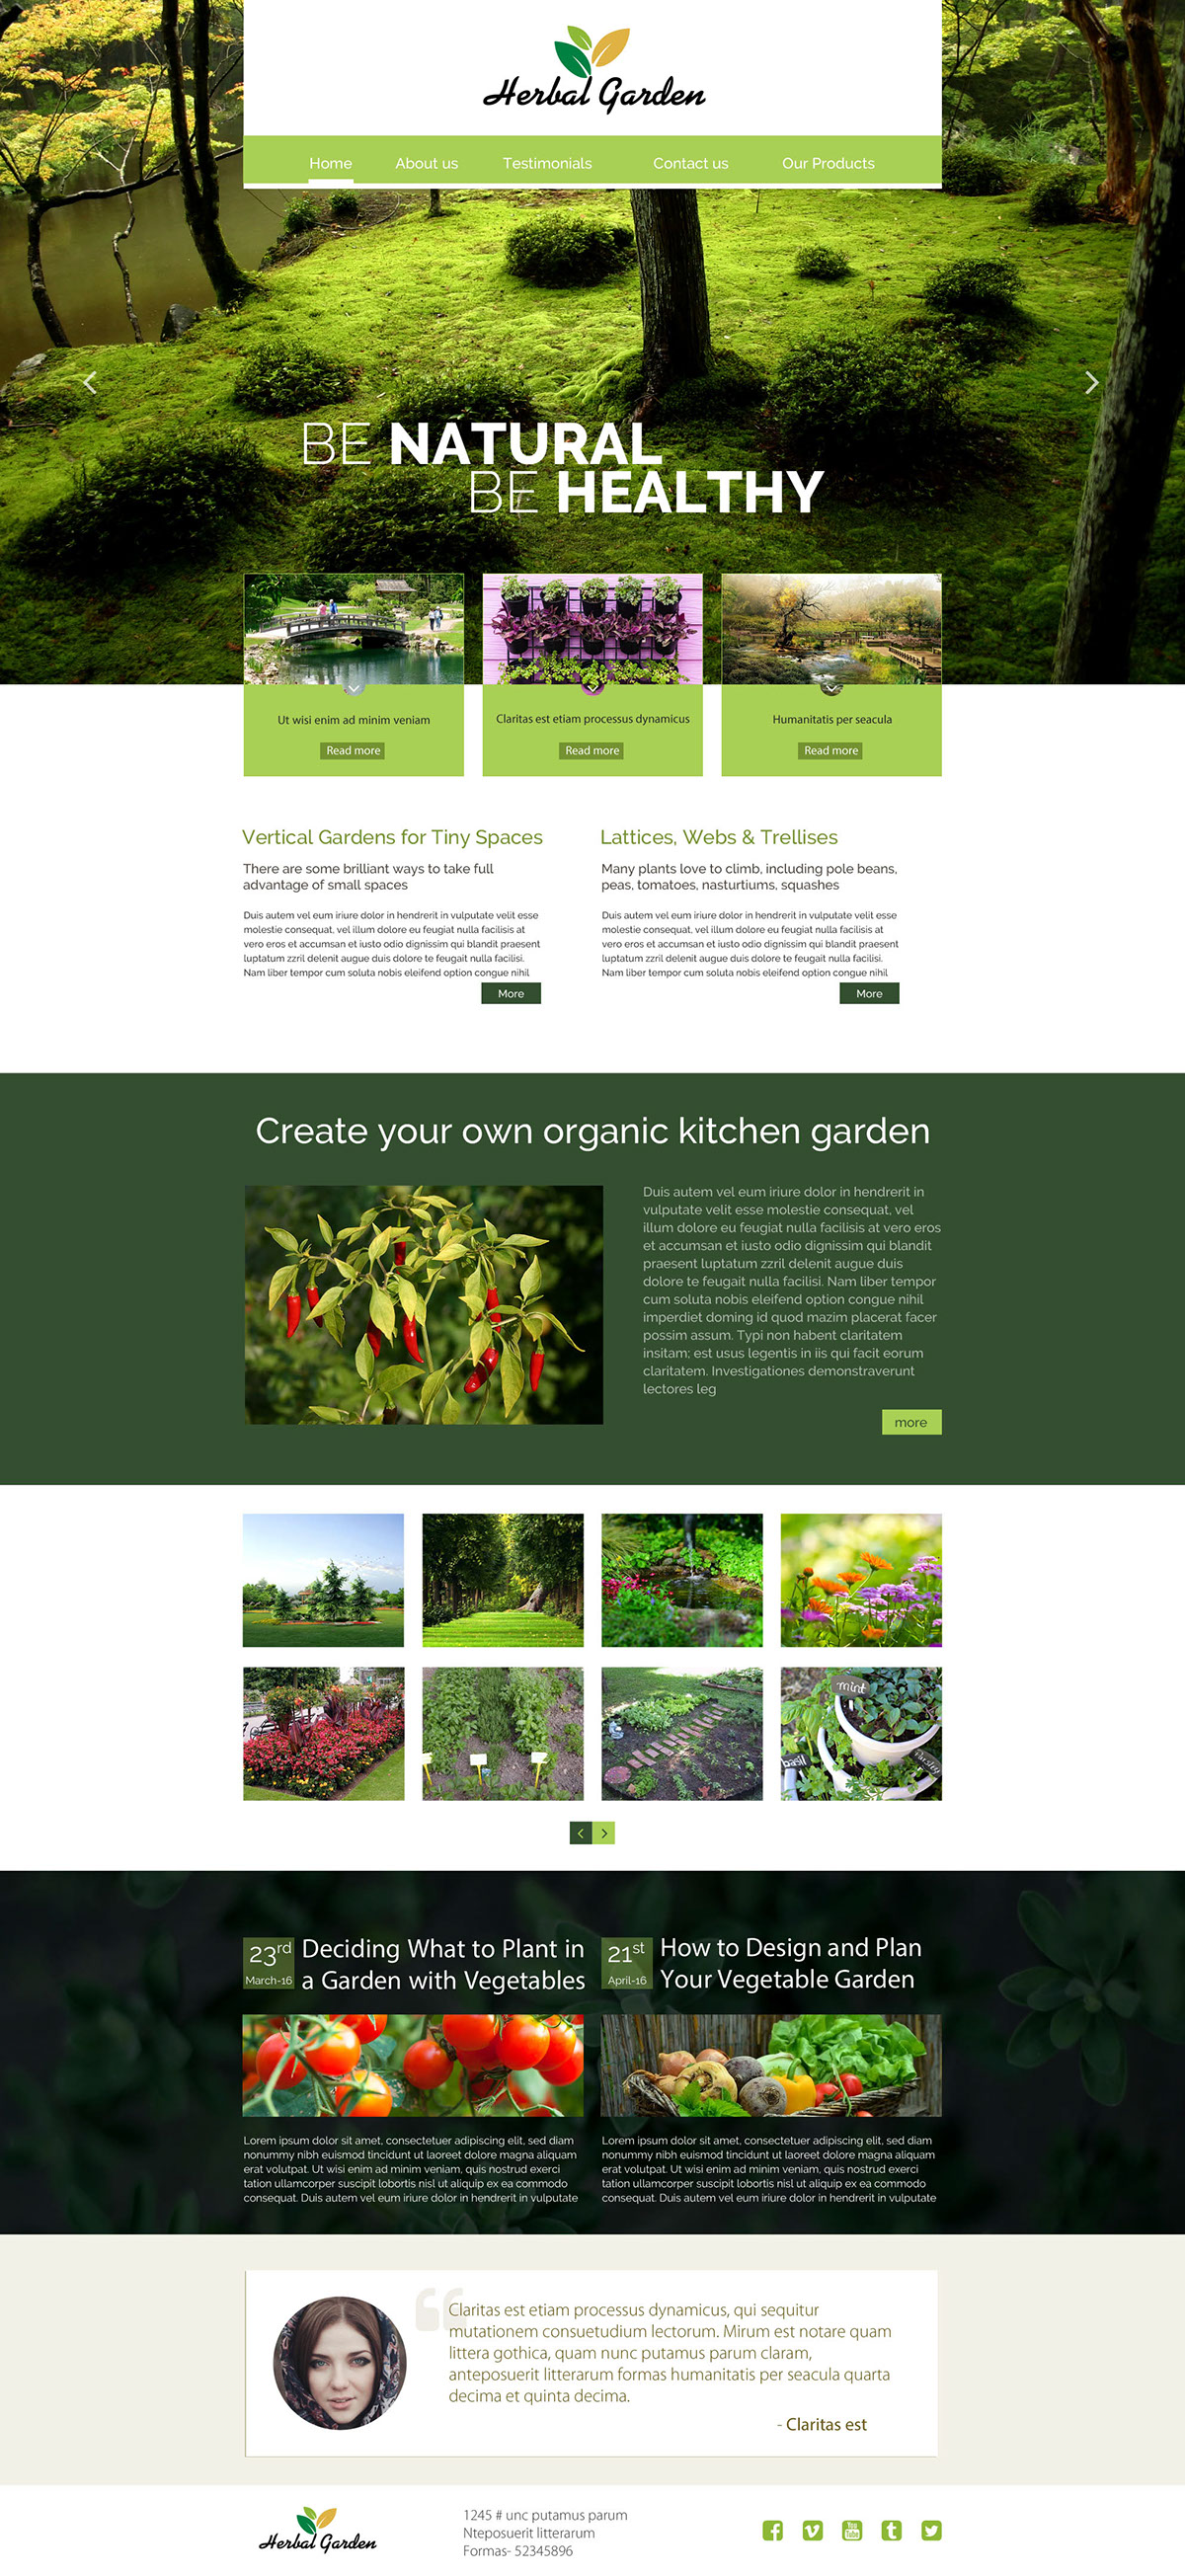 herbal herbalgarden garden green datta3 Kitchengarden soil ResponsiveWeb Website uidesign uxdesign